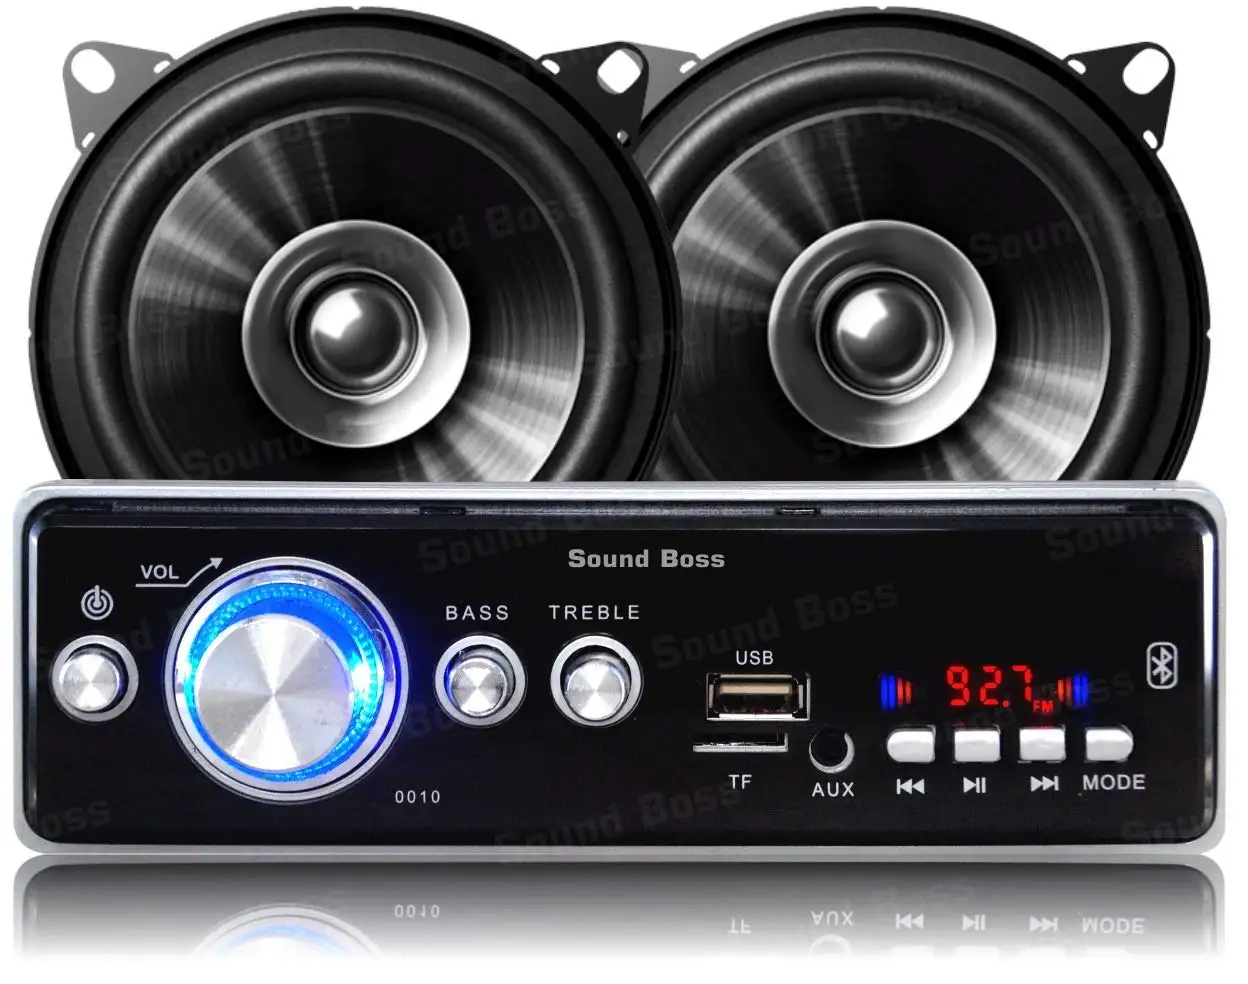 Sound Boss AUX SD USB bluetooth cruscotto Stereo per auto FM/MP3 4 "revisore Dual Performance 200W MAX B1015